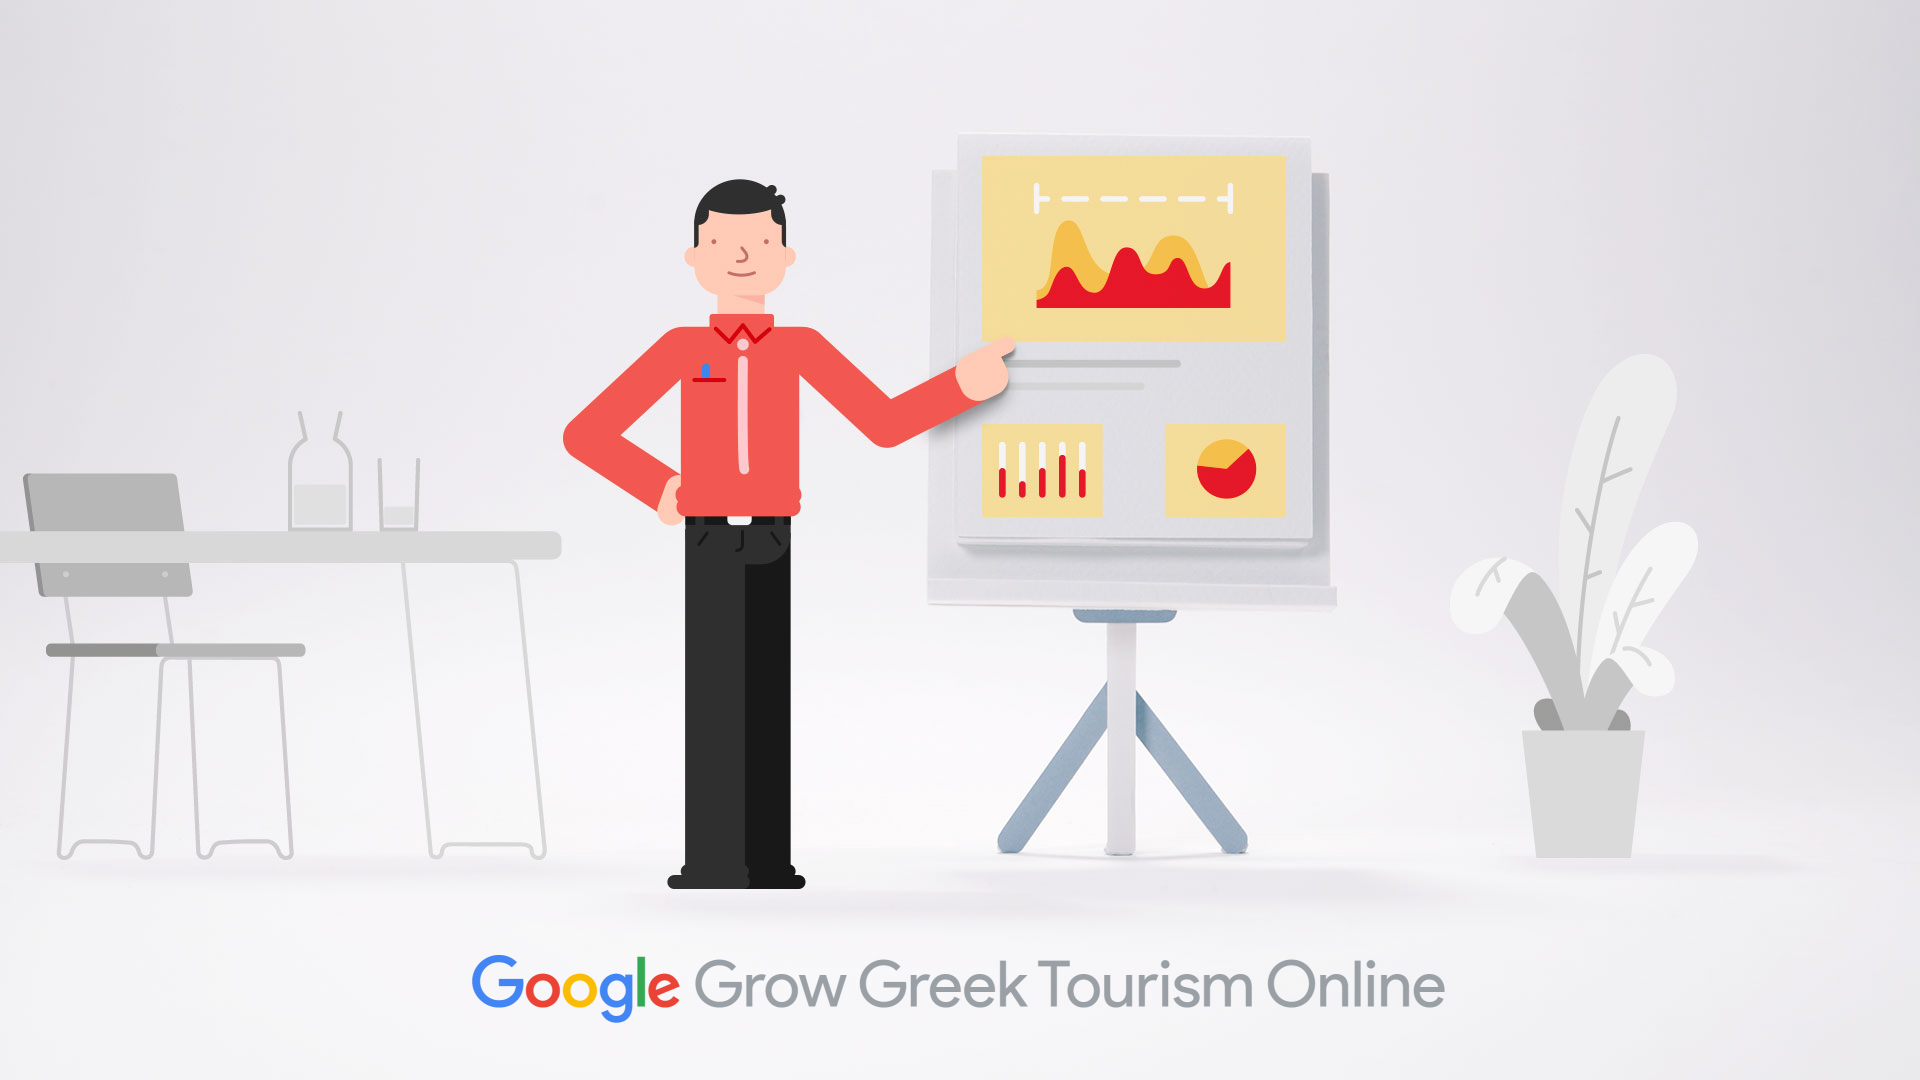 Σεμινάριο Ψηφιακών Δεξιοτήτων Google Grow Greek Tourism Online στη Λάρισα